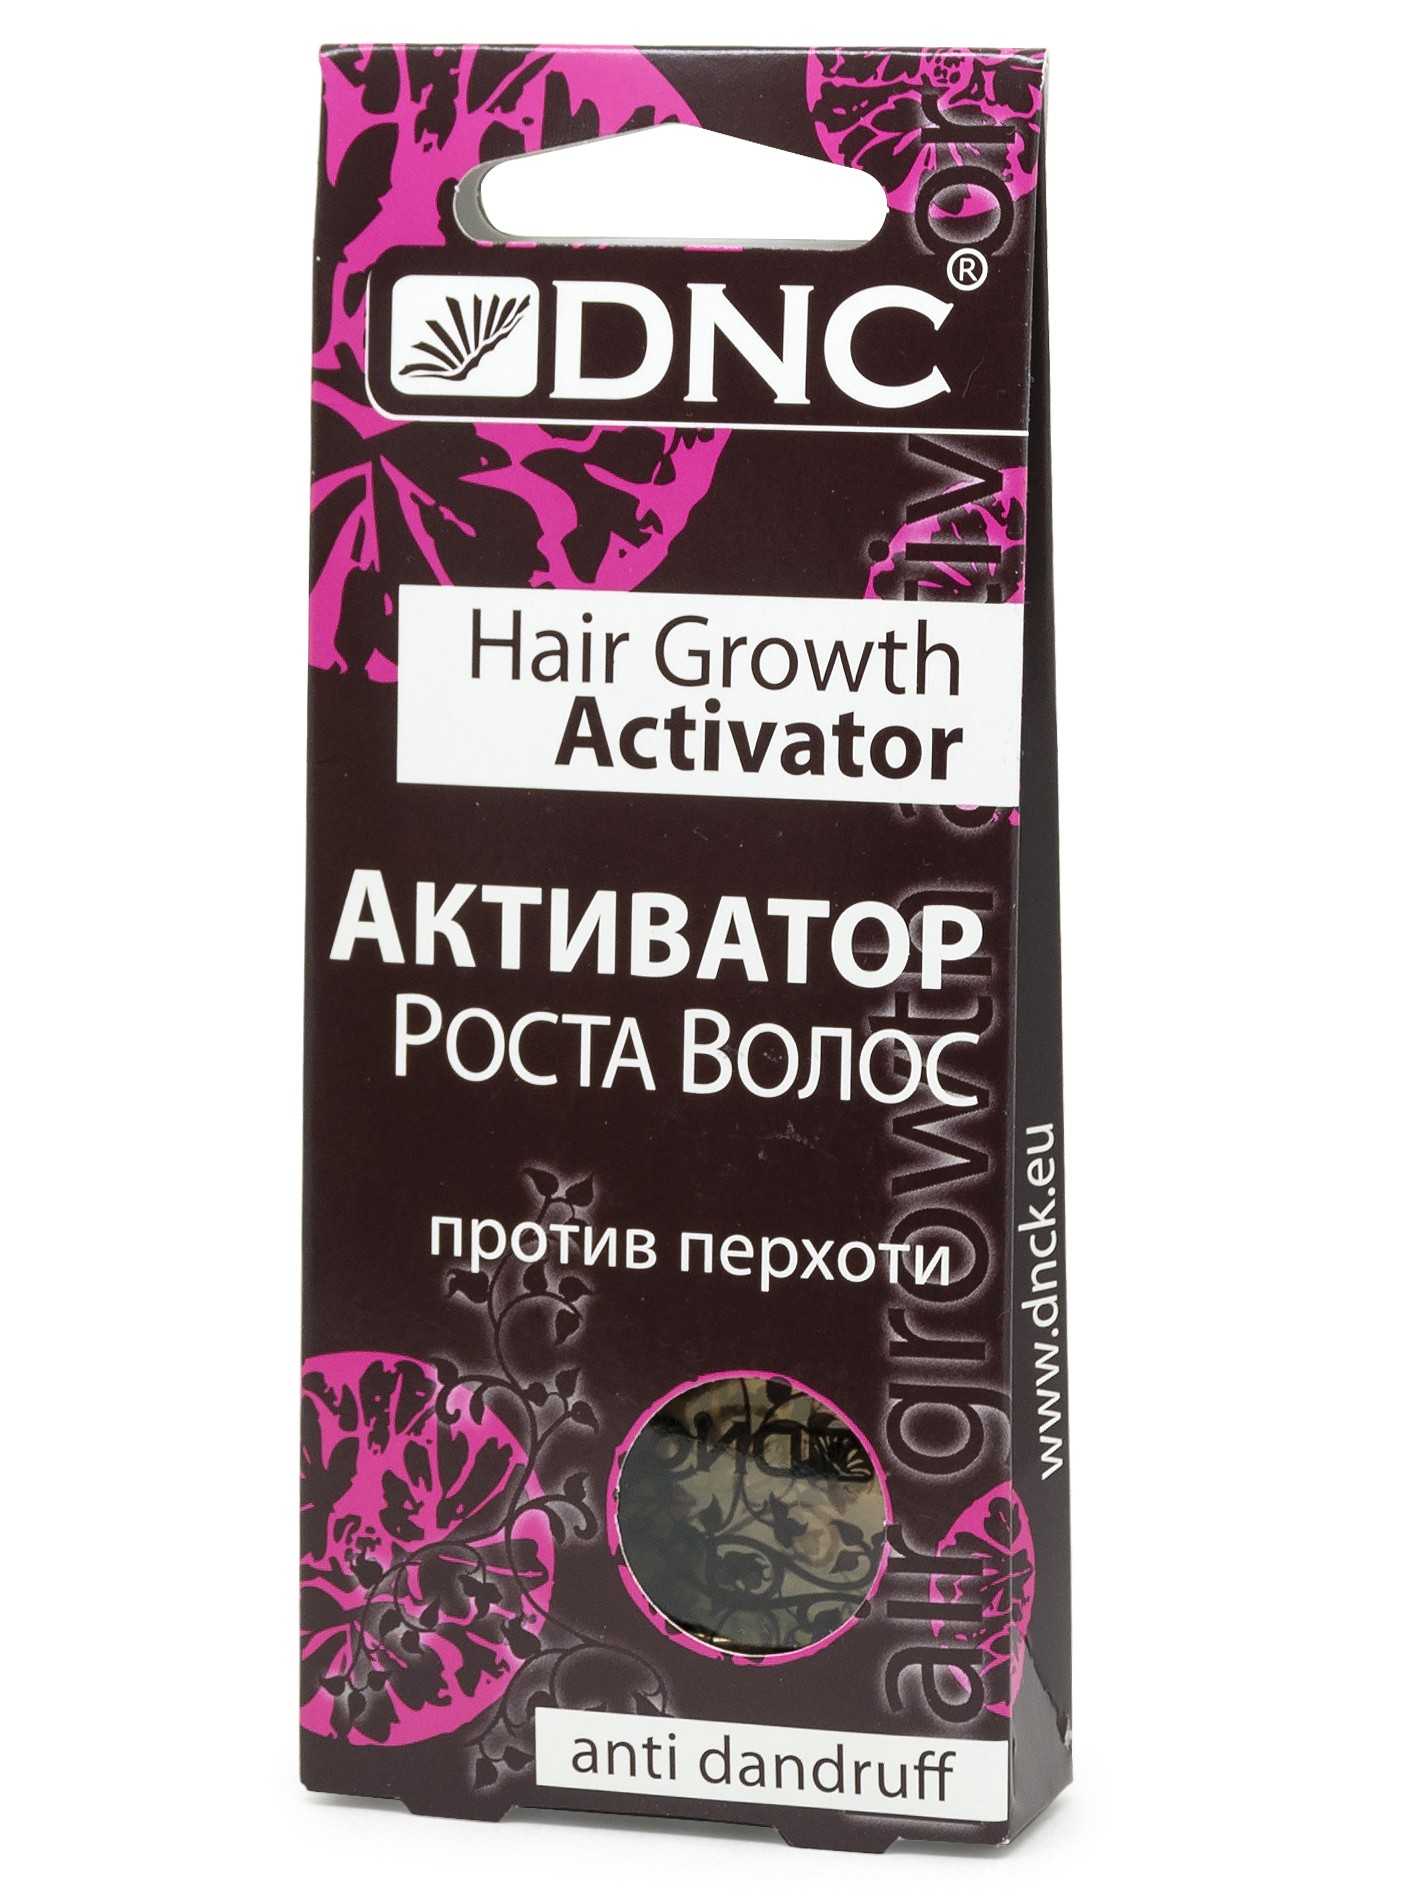 Активатор роста волос dnc – описание продукта и отзывы о применении